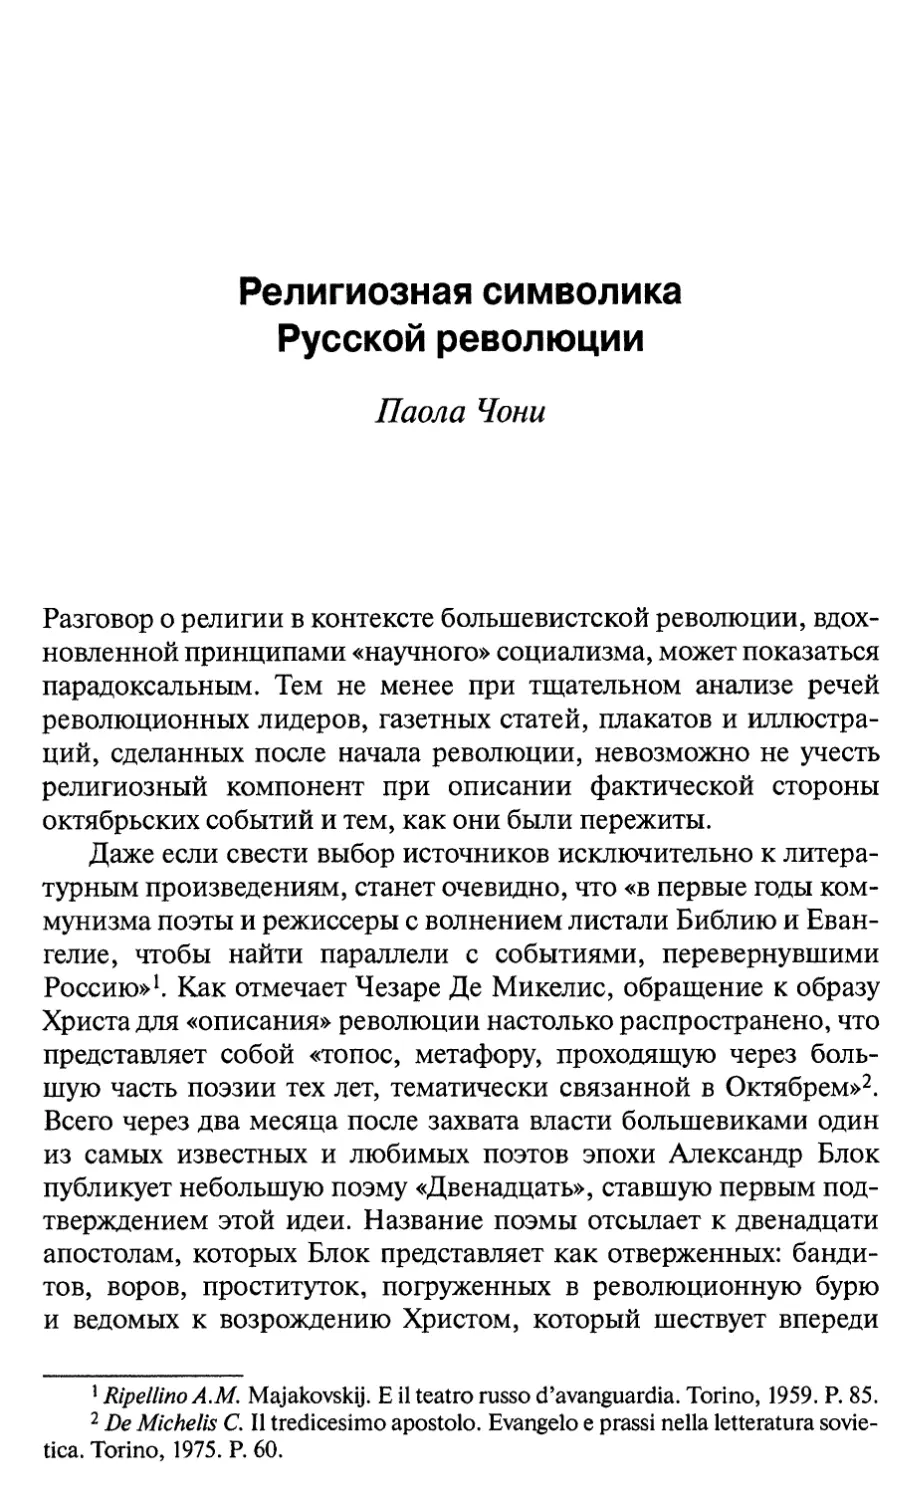 Паола Чони. Религиозная символика Русской революции